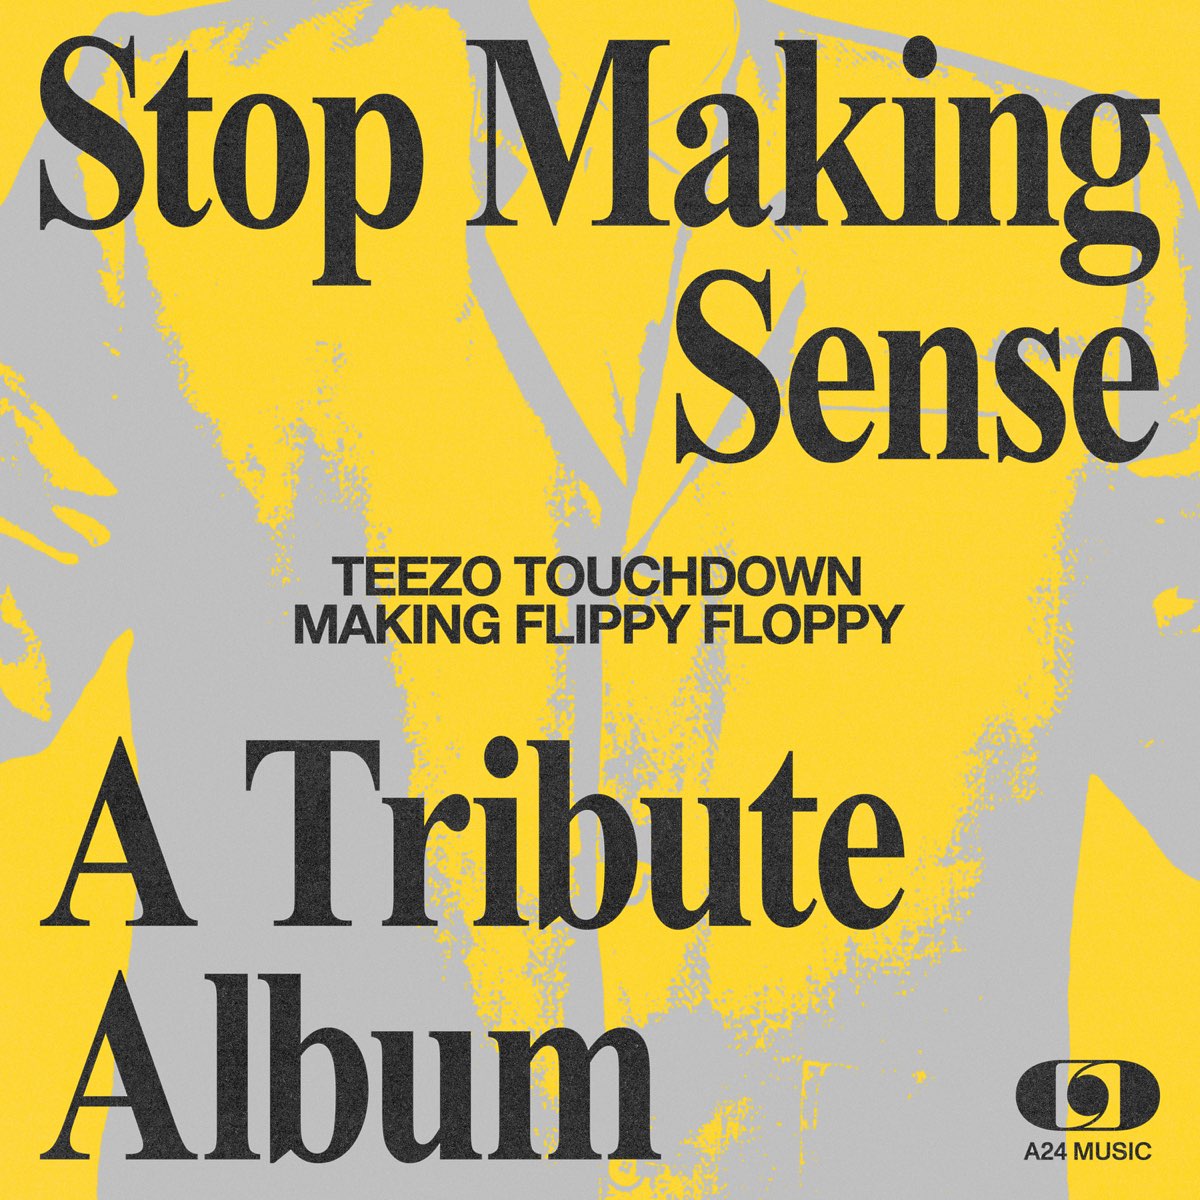 Teezo Touchdown — Making Flippy Floppy cover artwork